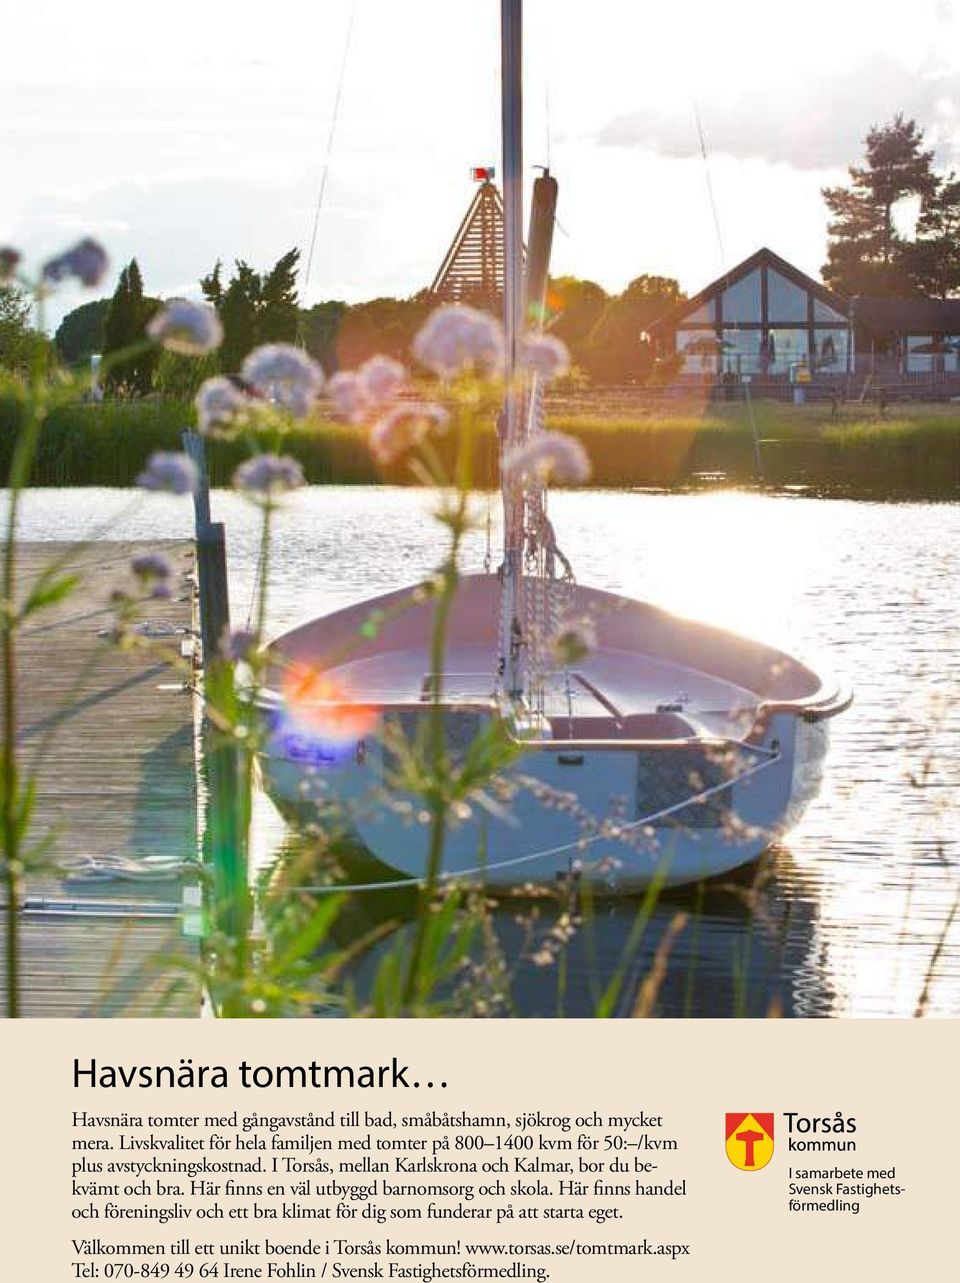 Här finns handel och föreningsliv och ett bra klimat för dig som funderar på att starta eget. Välkommen till ett unikt boende i Torsås kommun! www.torsas.se/tomtmark.